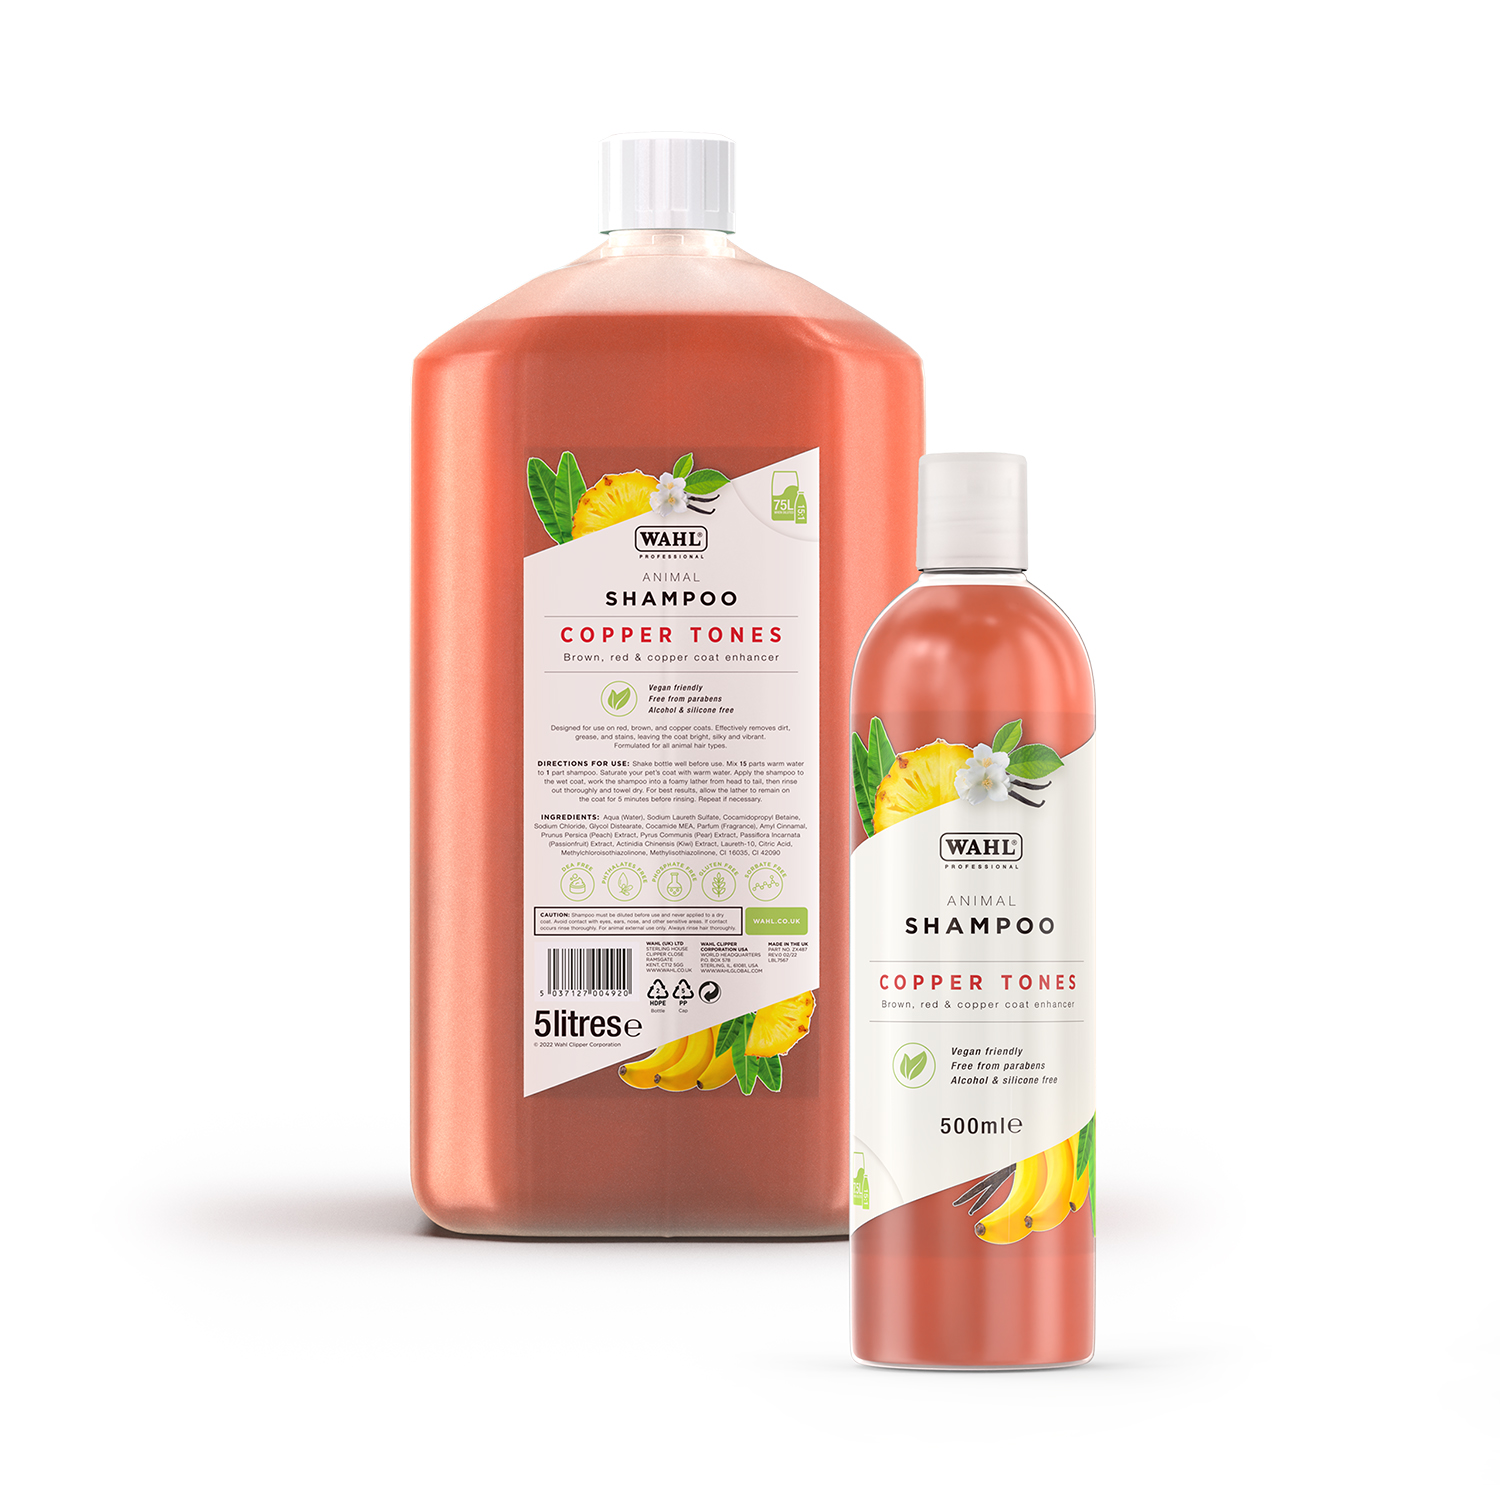 Copper tones shampoo bottle